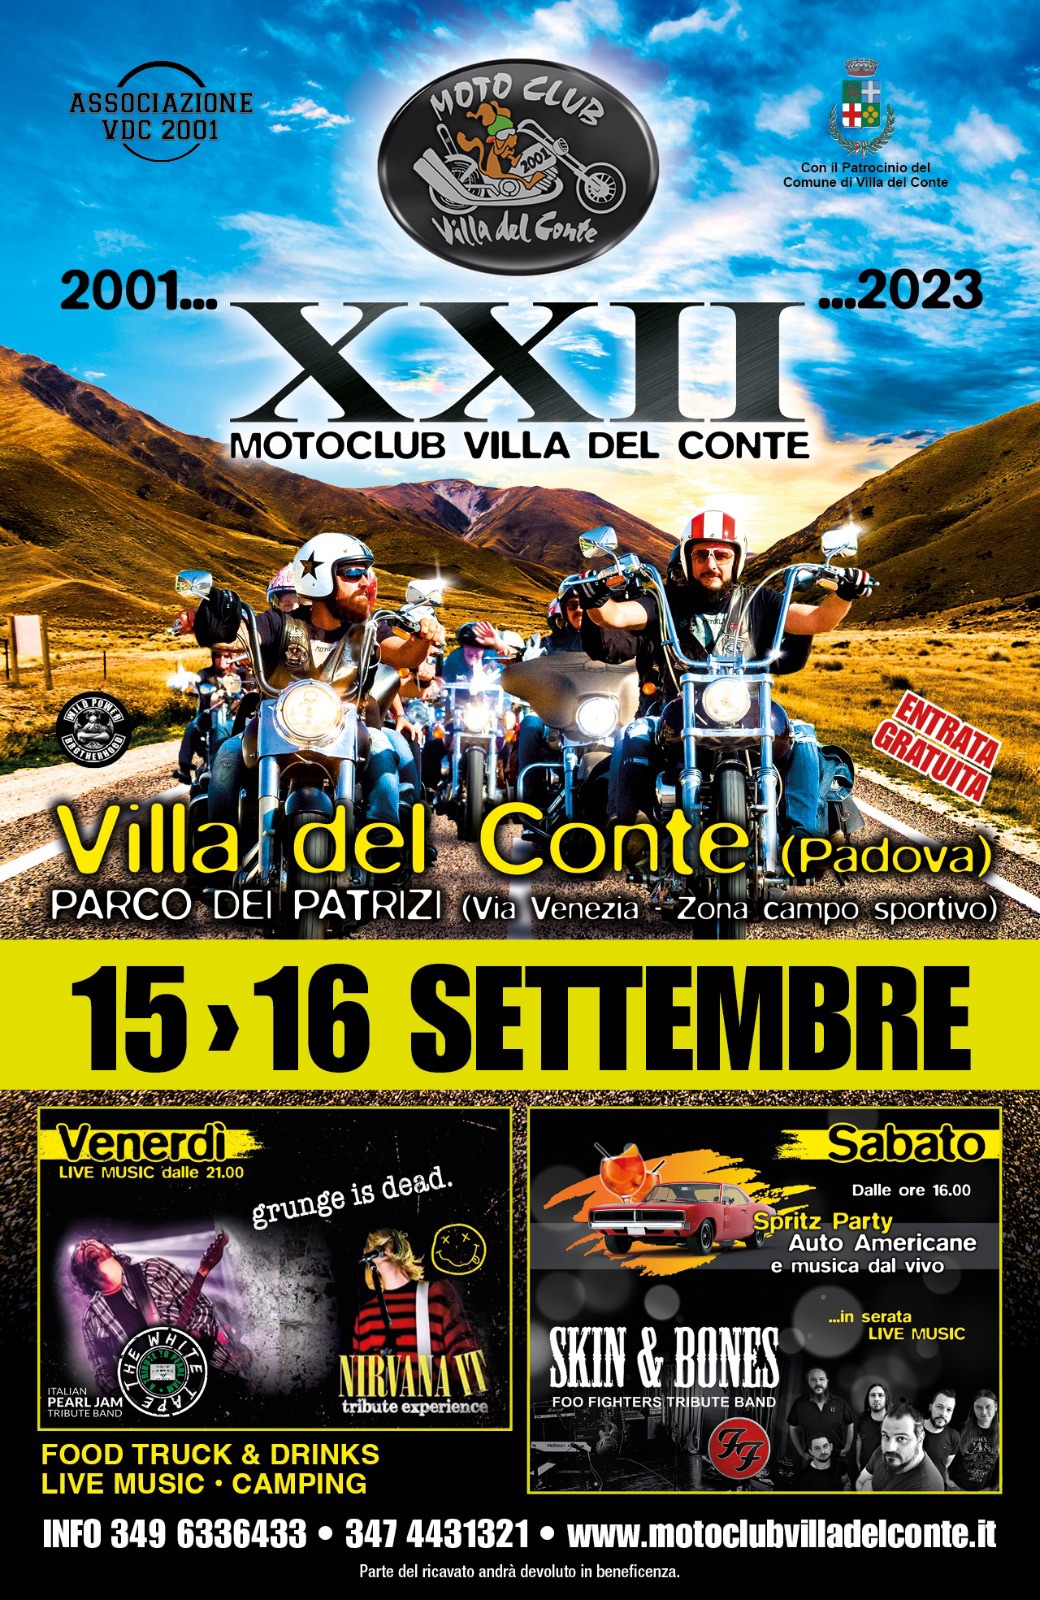 XXII motoclub Villa del conte